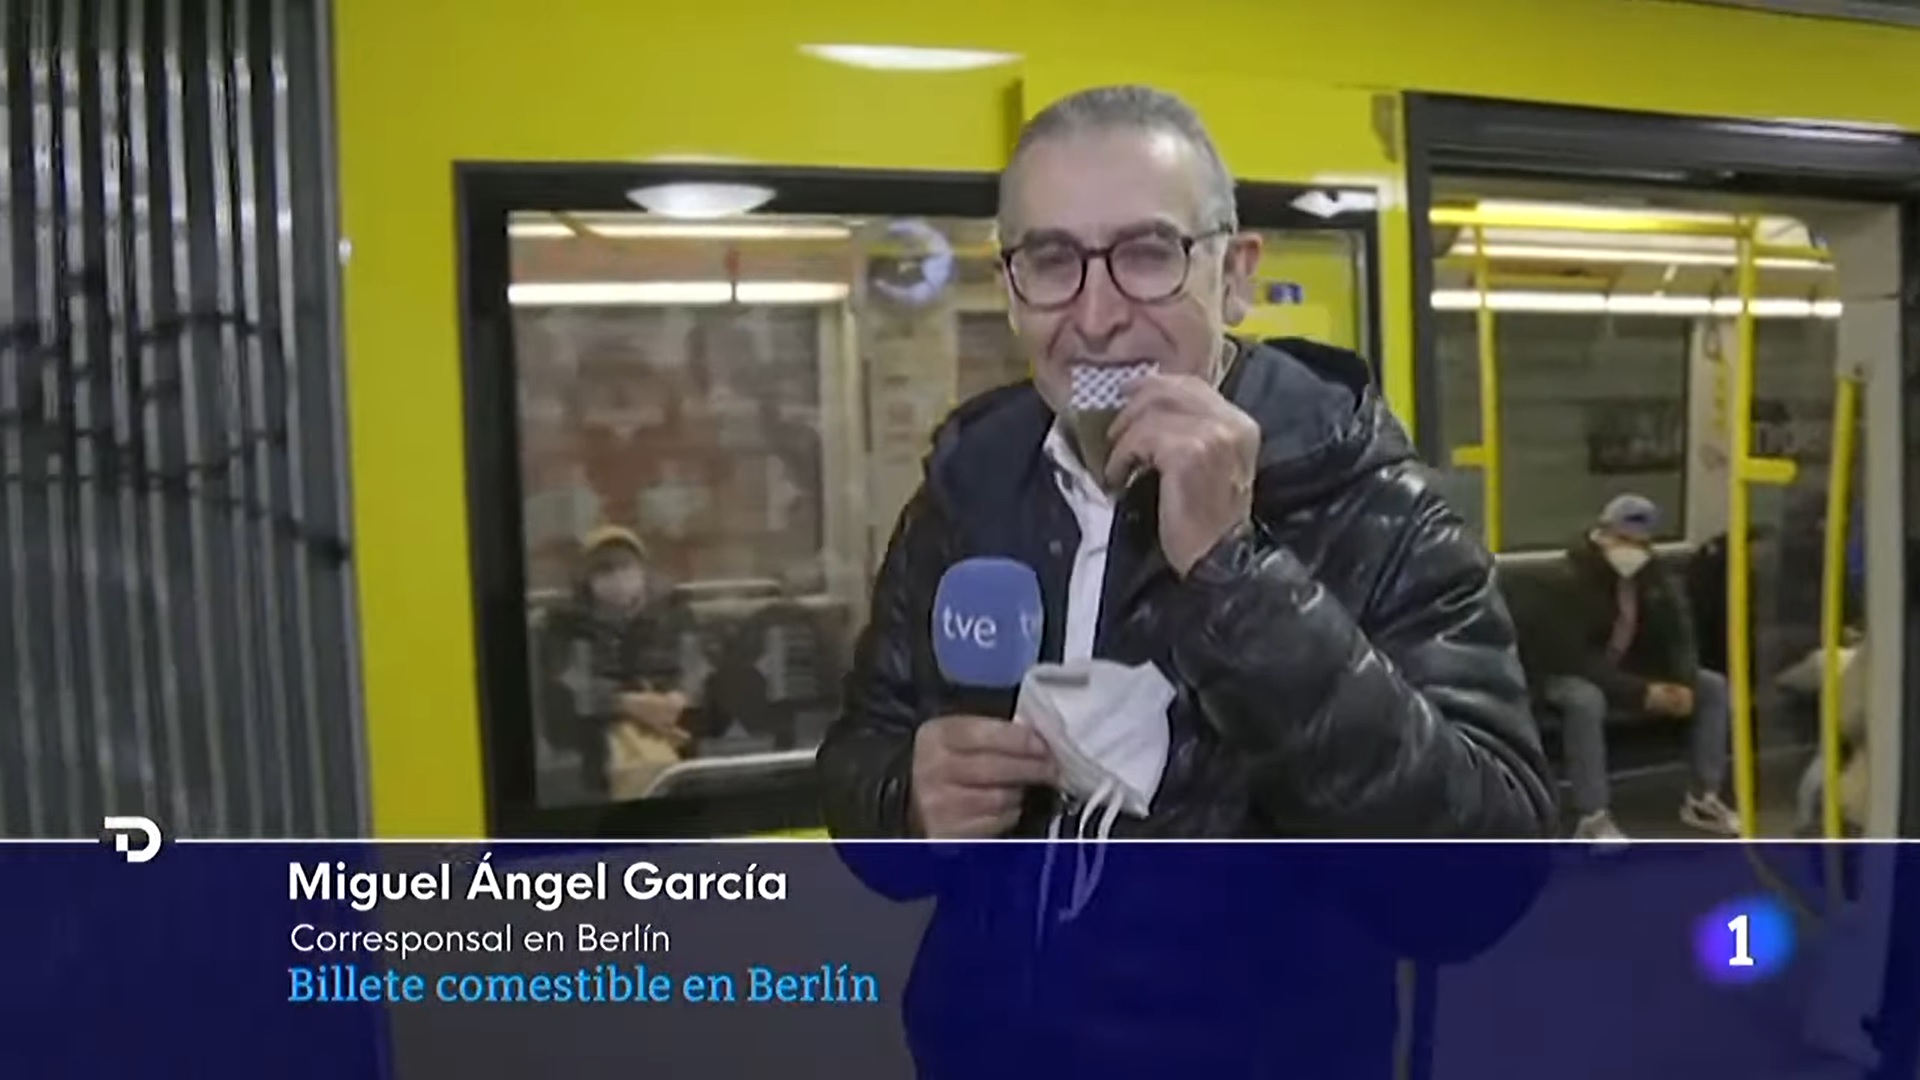 Miguel Ángel García El Telediario